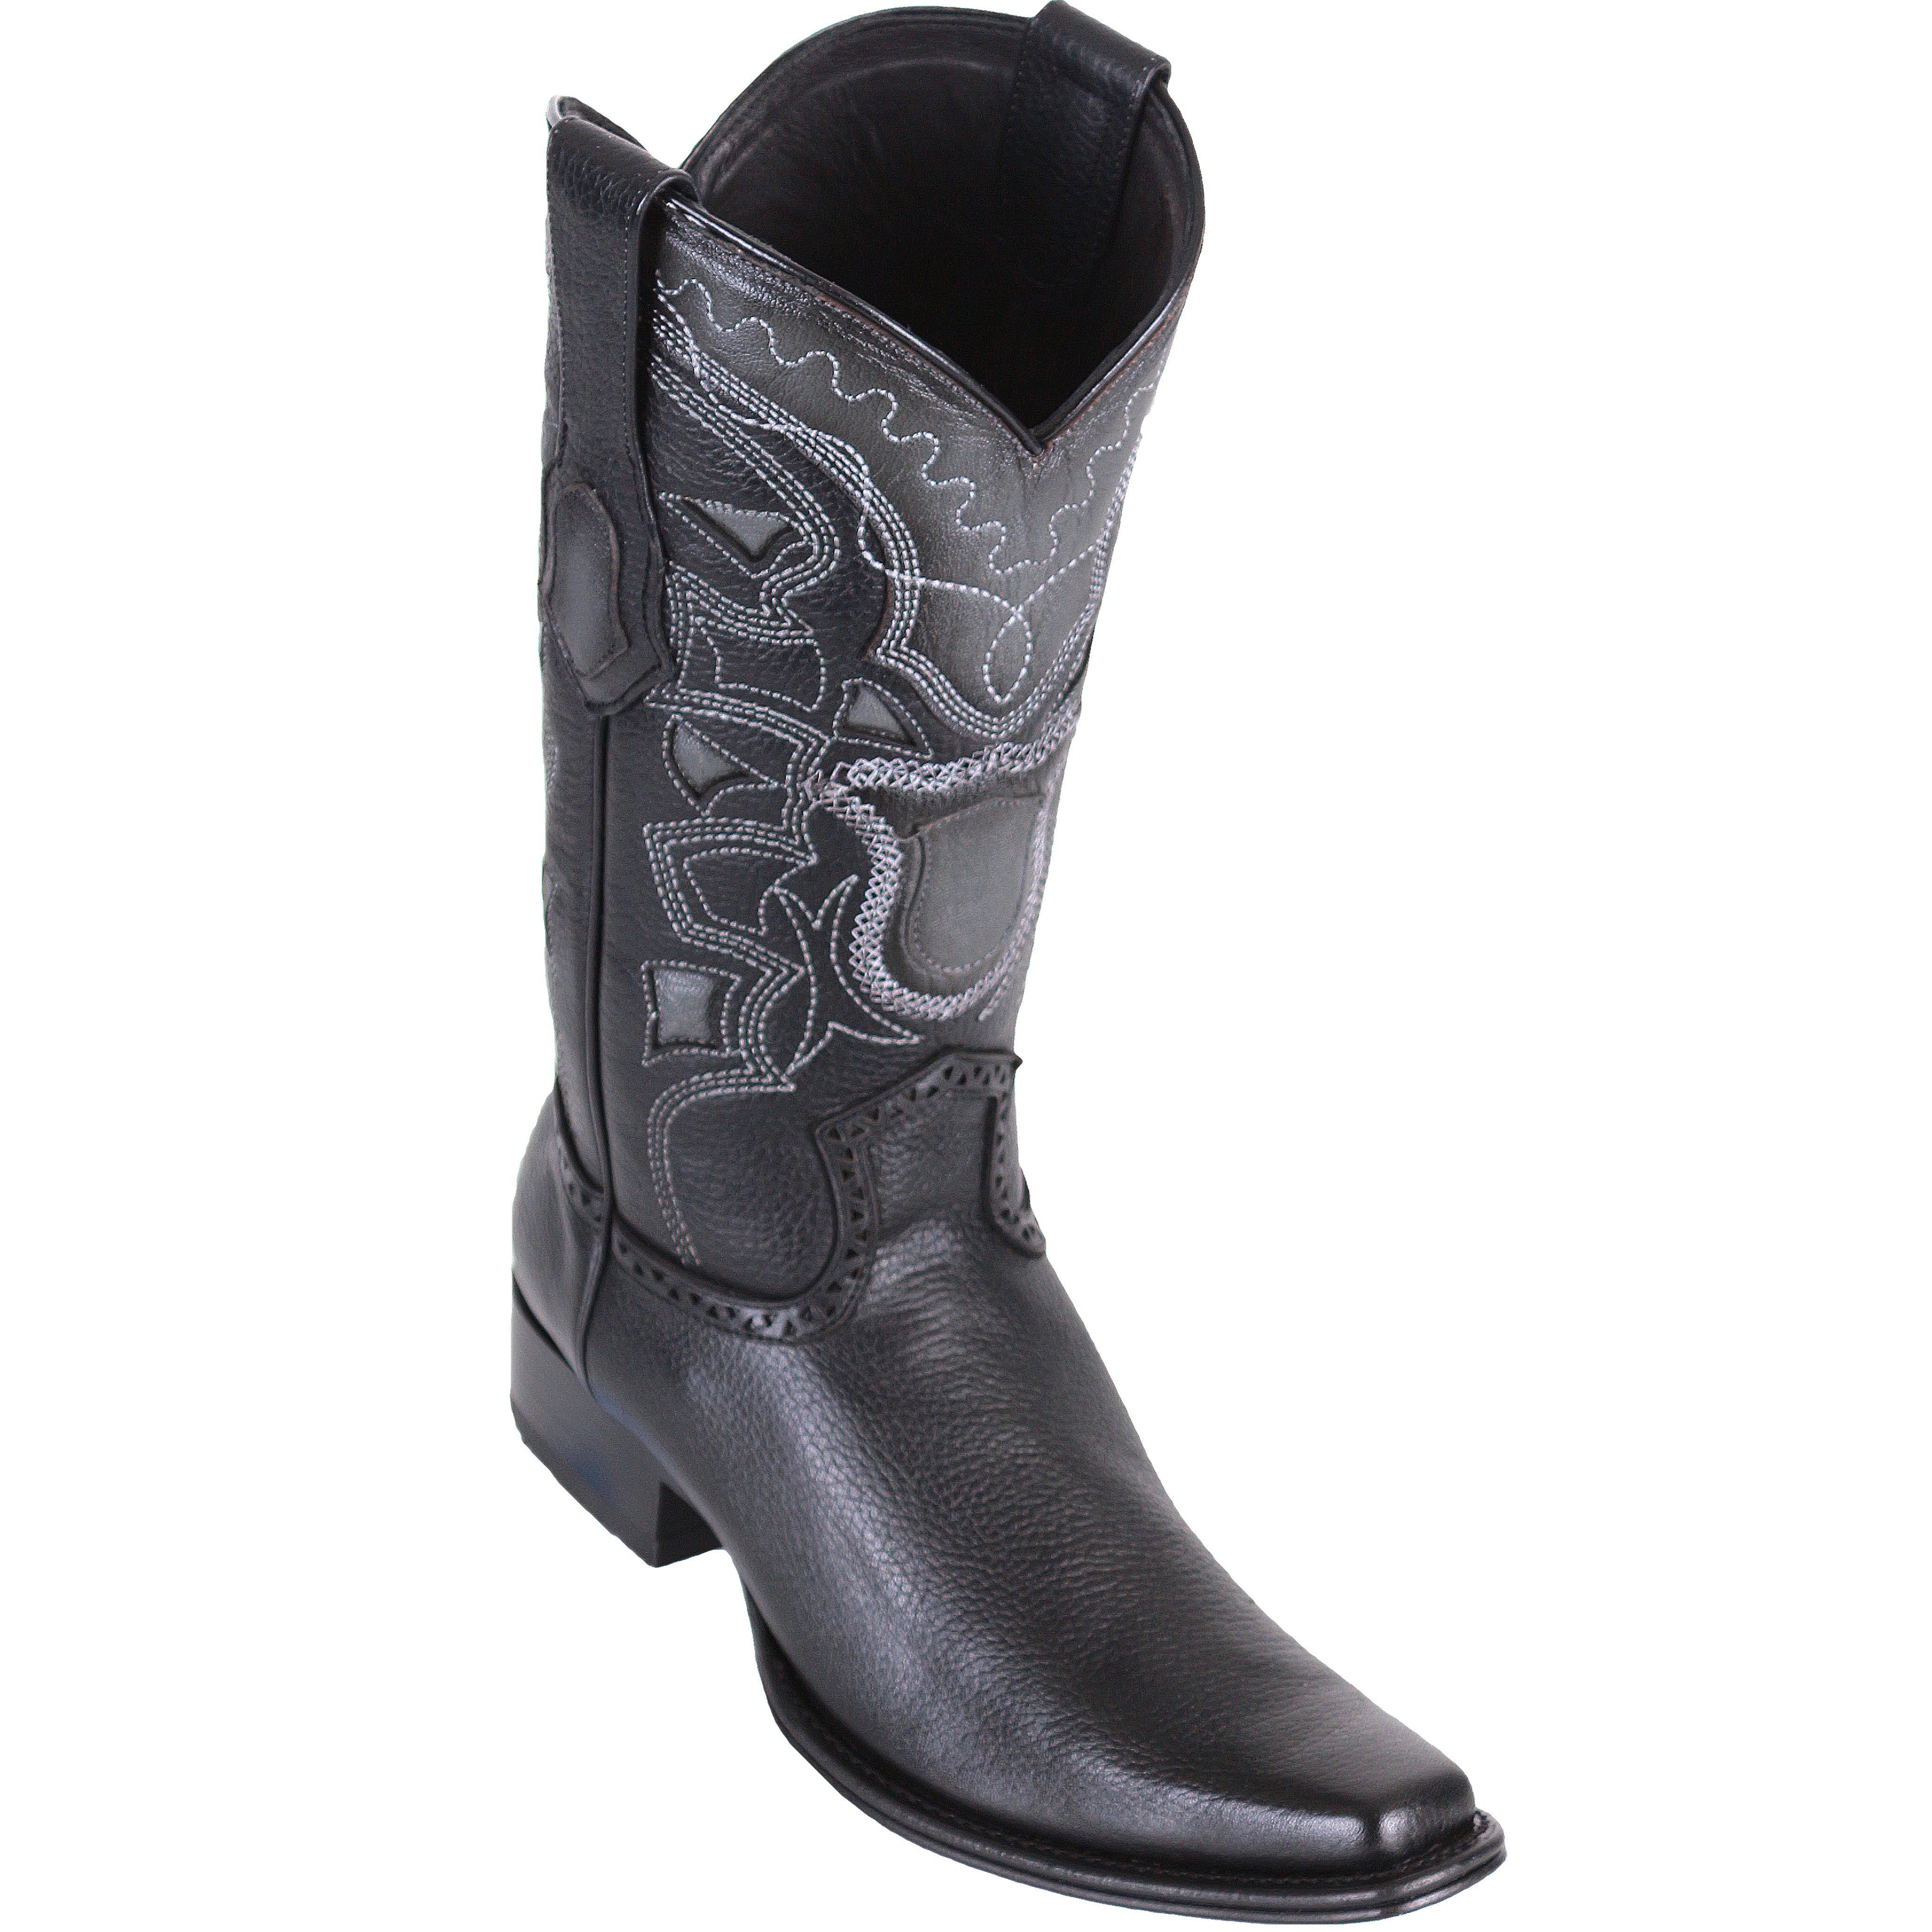 Los Altos Black Western Boots - European Toe